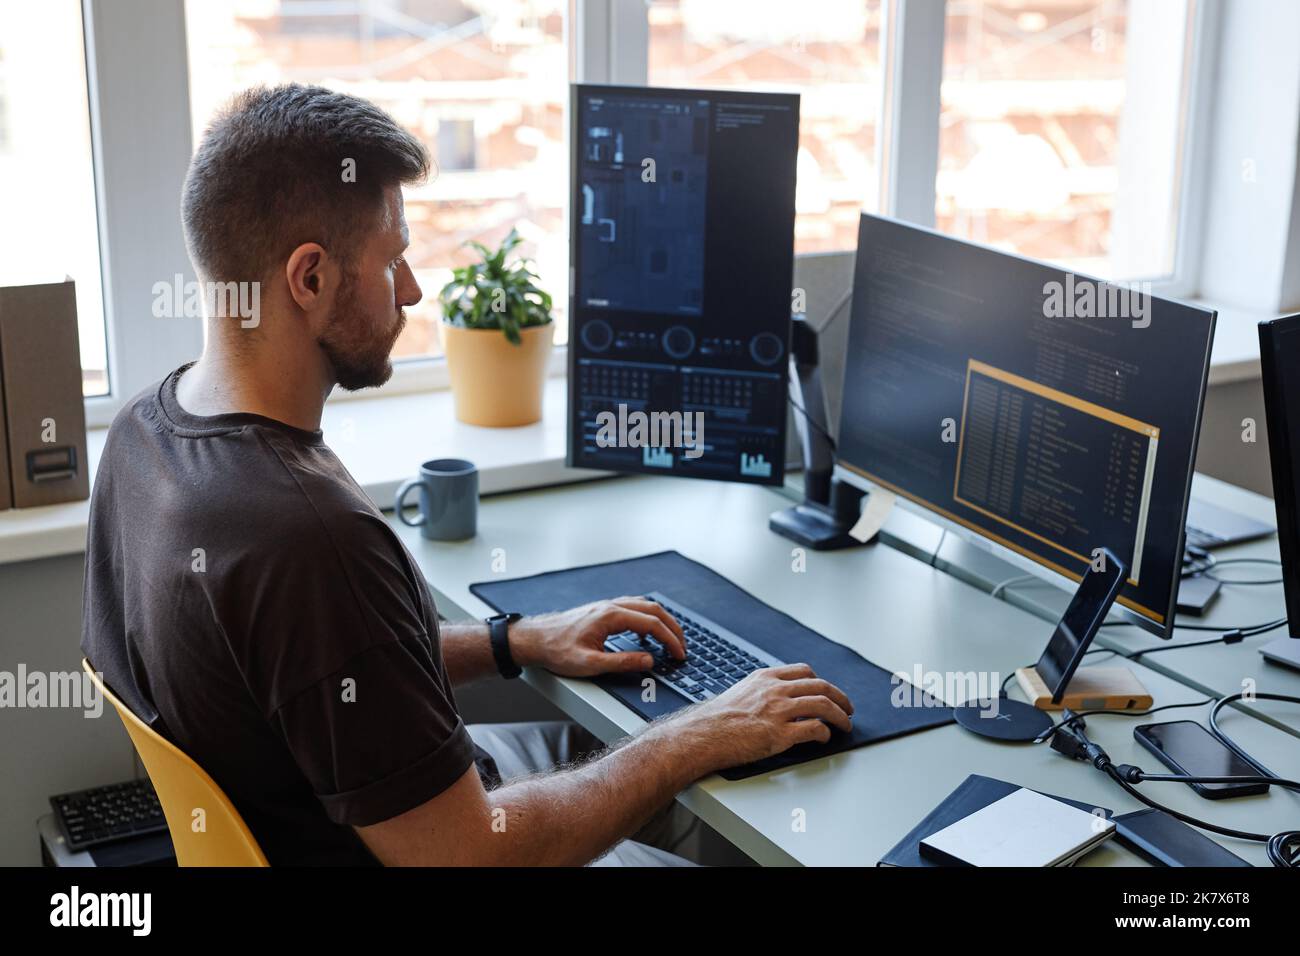 Ritratto ad angolo alto di un giovane software engineer che scrive codice sul posto di lavoro con più schermi di computer Foto Stock